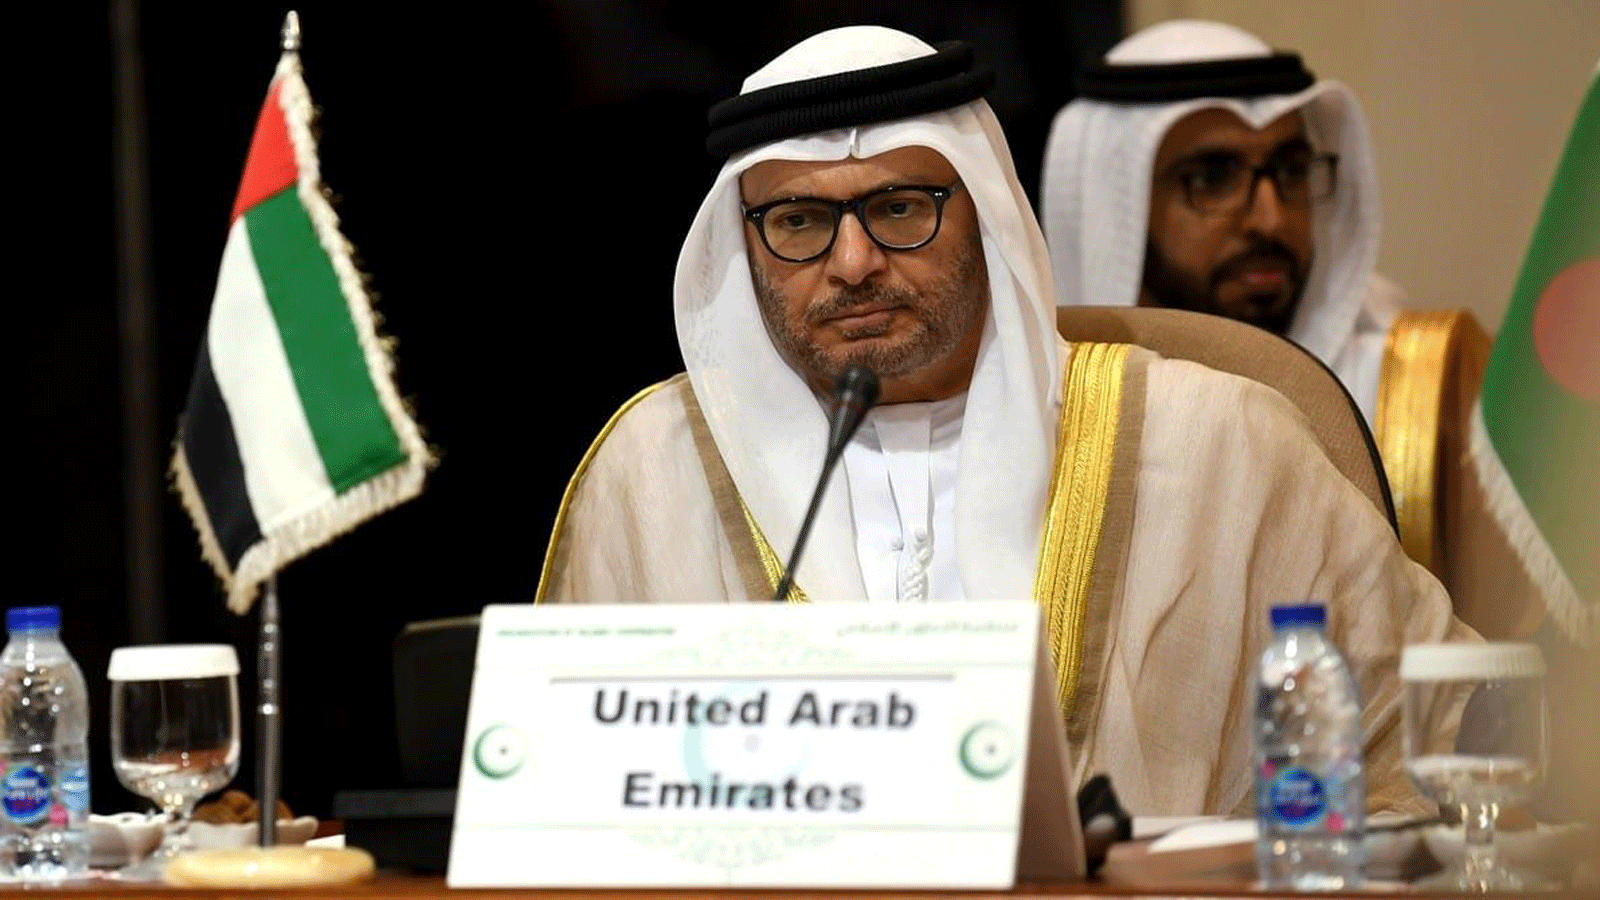 المستشار الدبلوماسي لرئيس الإمارات د. أنور قرقاش في جدة بتاريخ 17 تموز/يوليو 2019 حين كان وزير الدولة للشؤون الخارجية آنذاك